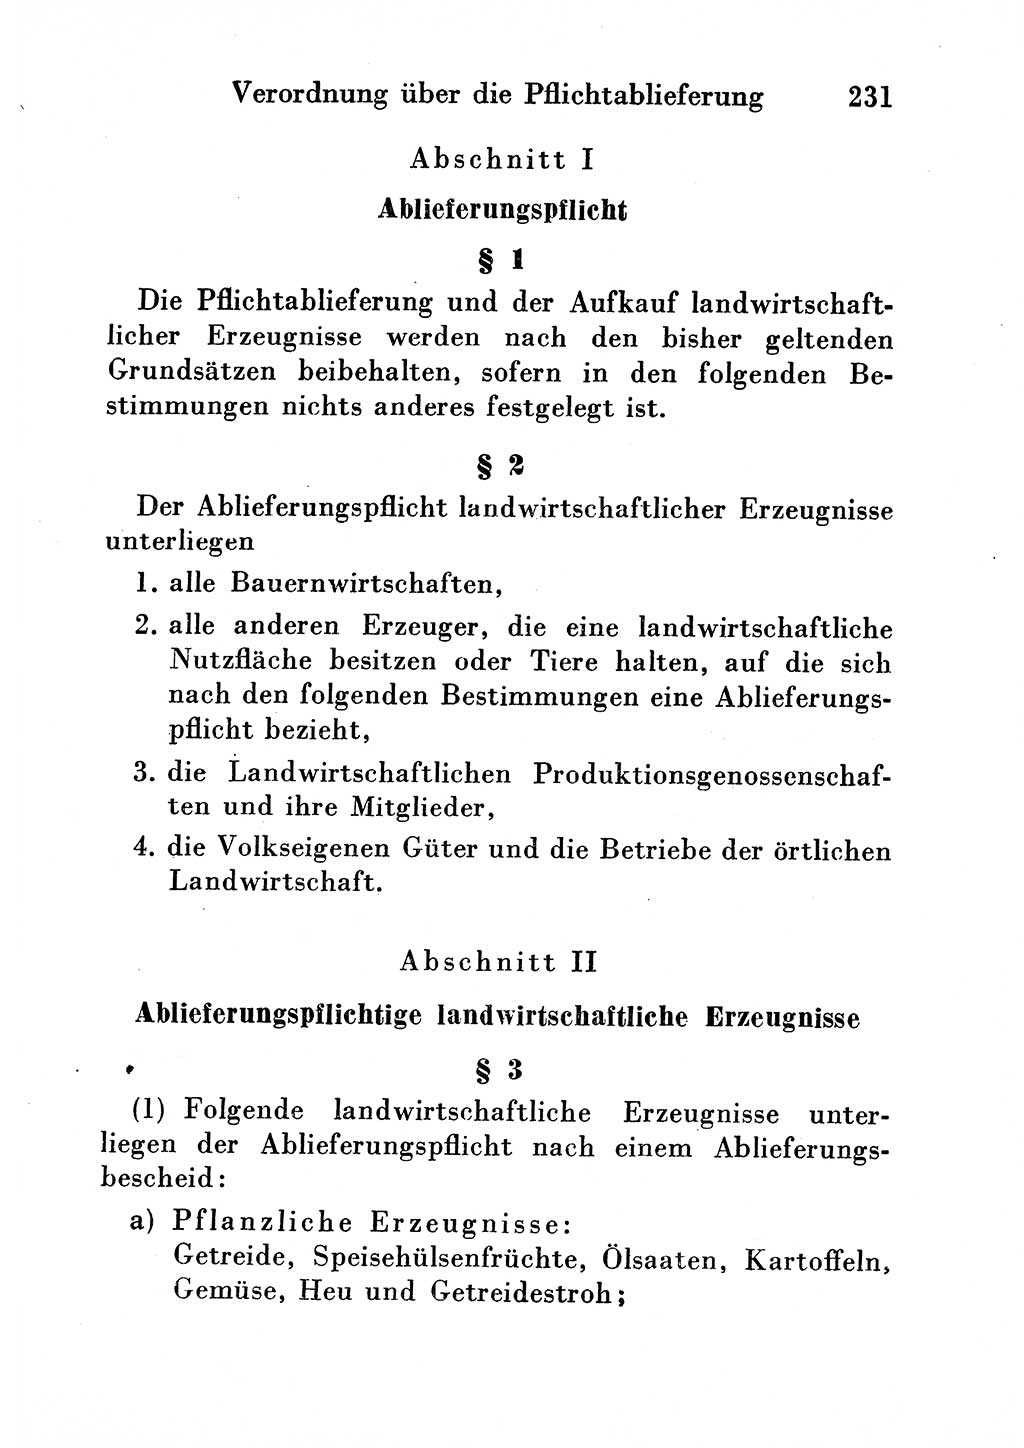 Strafgesetzbuch (StGB) und andere Strafgesetze [Deutsche Demokratische Republik (DDR)] 1954, Seite 231 (StGB Strafges. DDR 1954, S. 231)